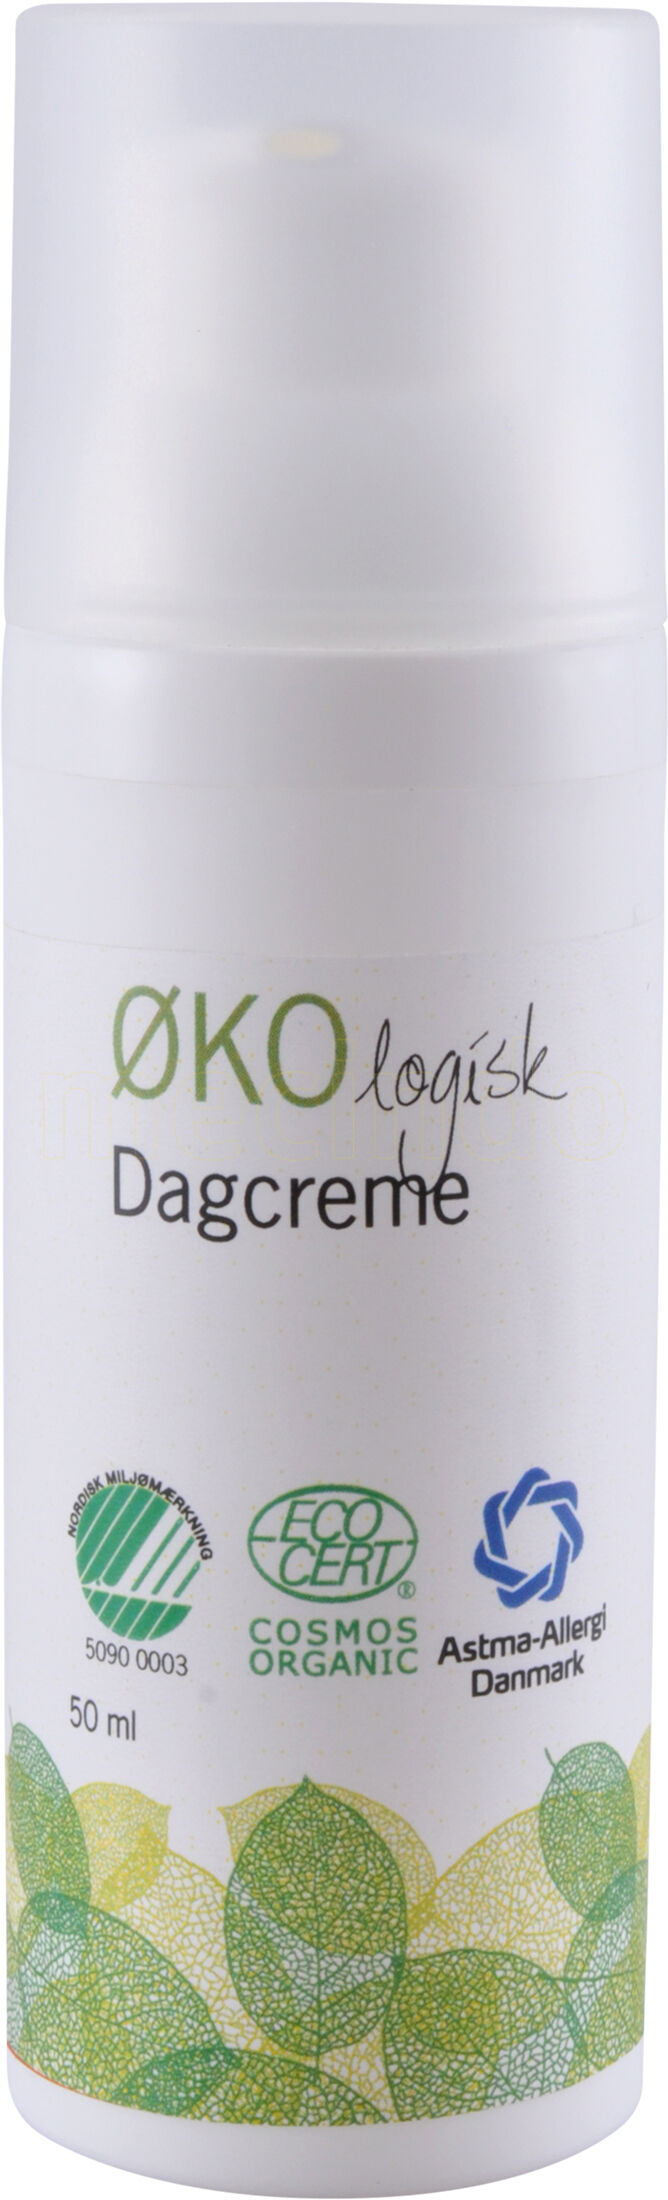 ØKOlogisk Dagcreme Økologisk - 50 ml